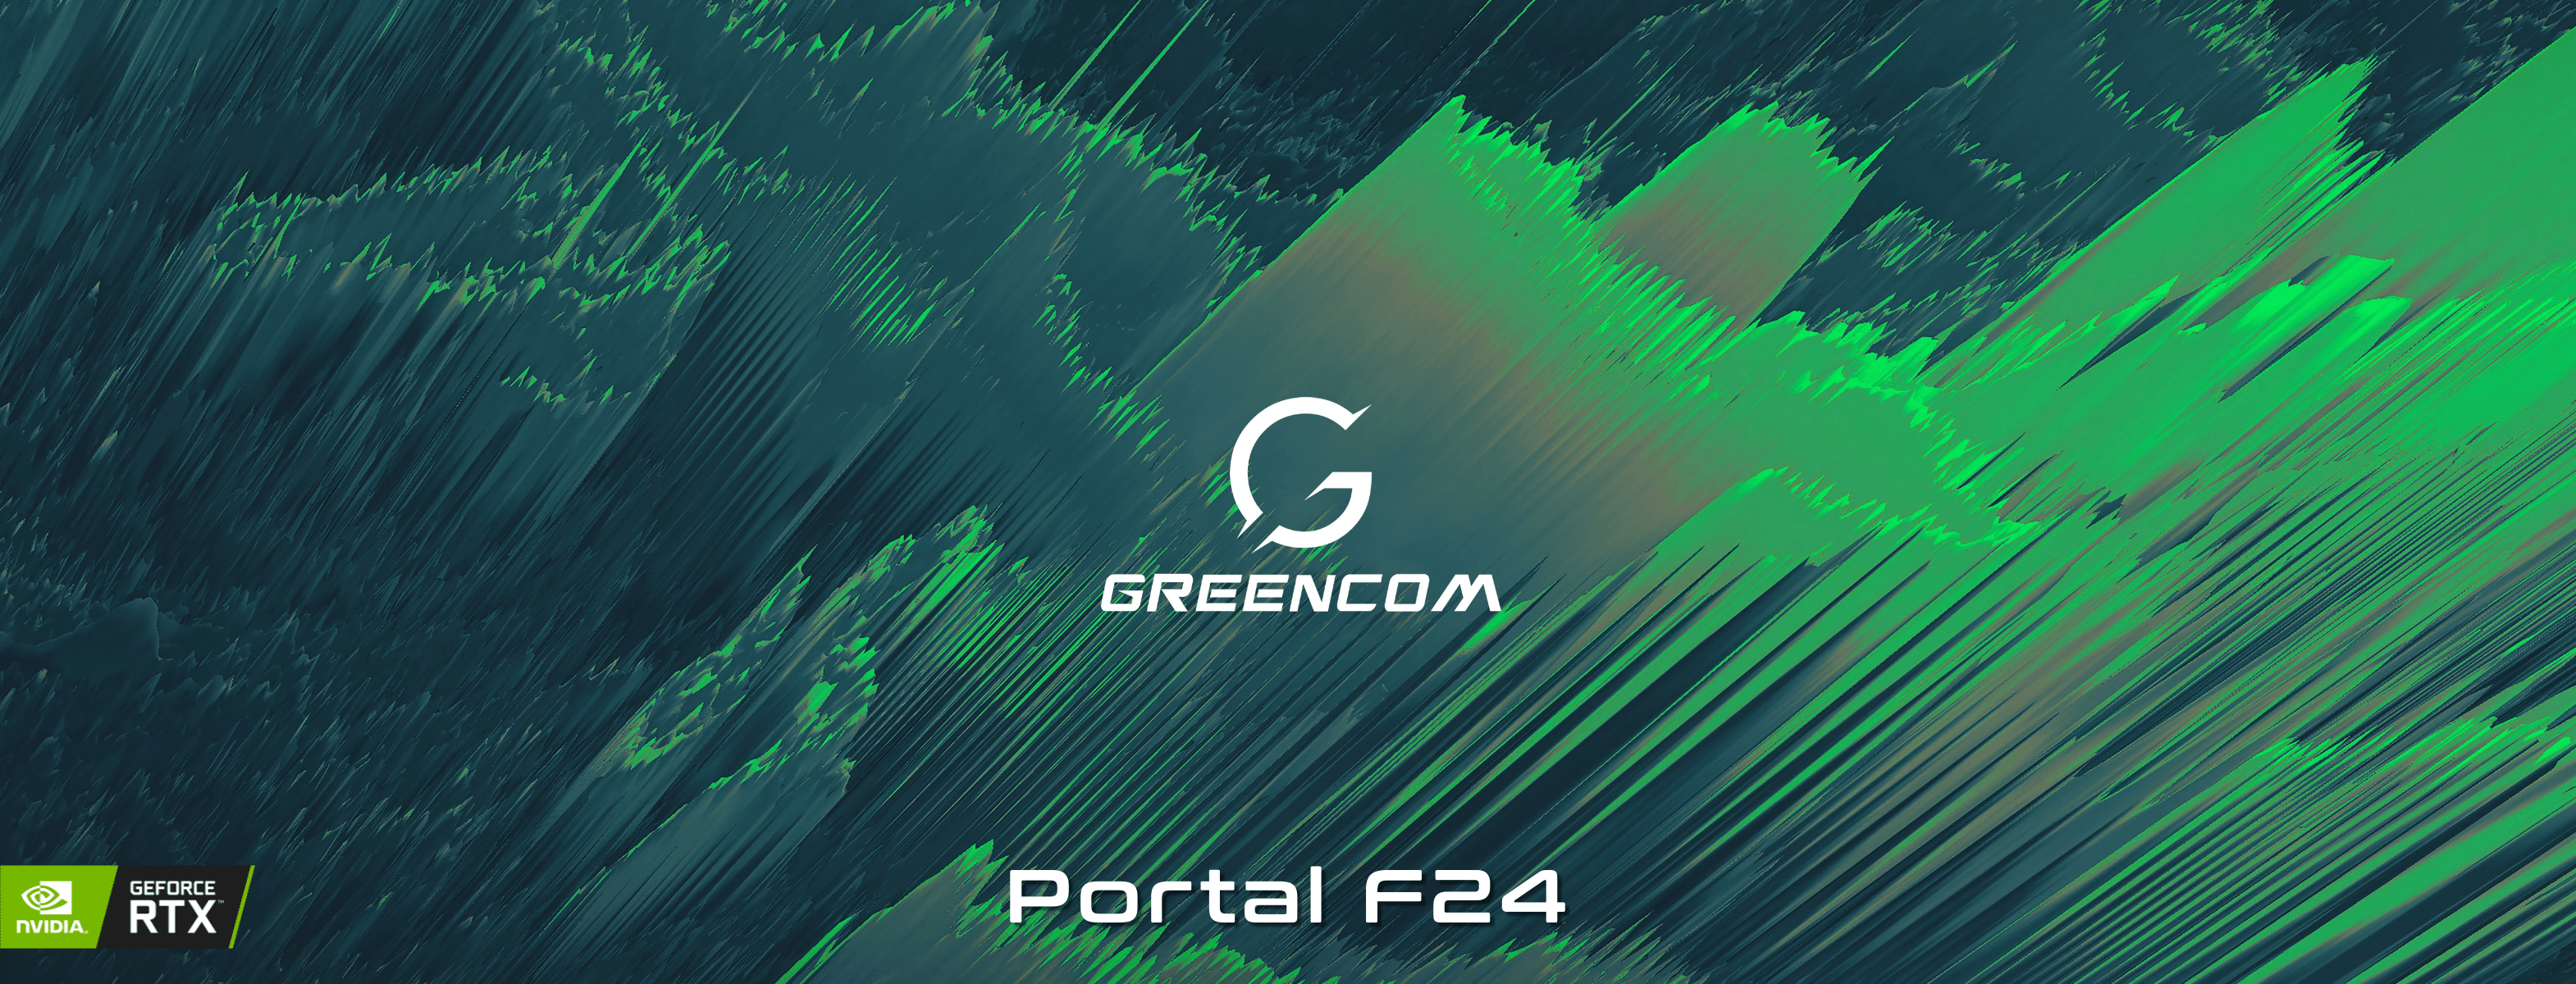 Portal F24